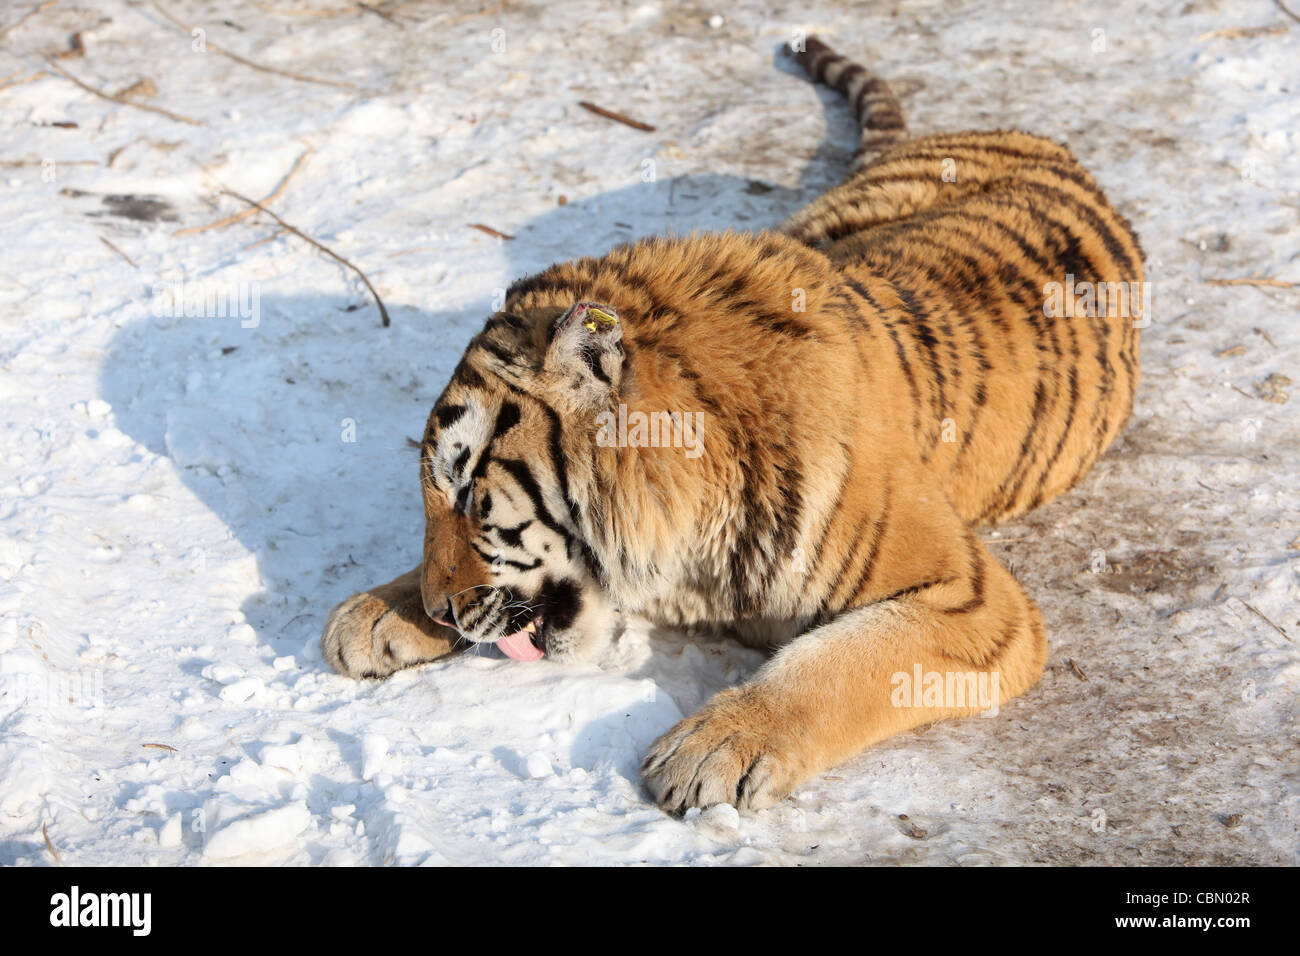 Siberian Tiger, Harbin, China Stock Photo